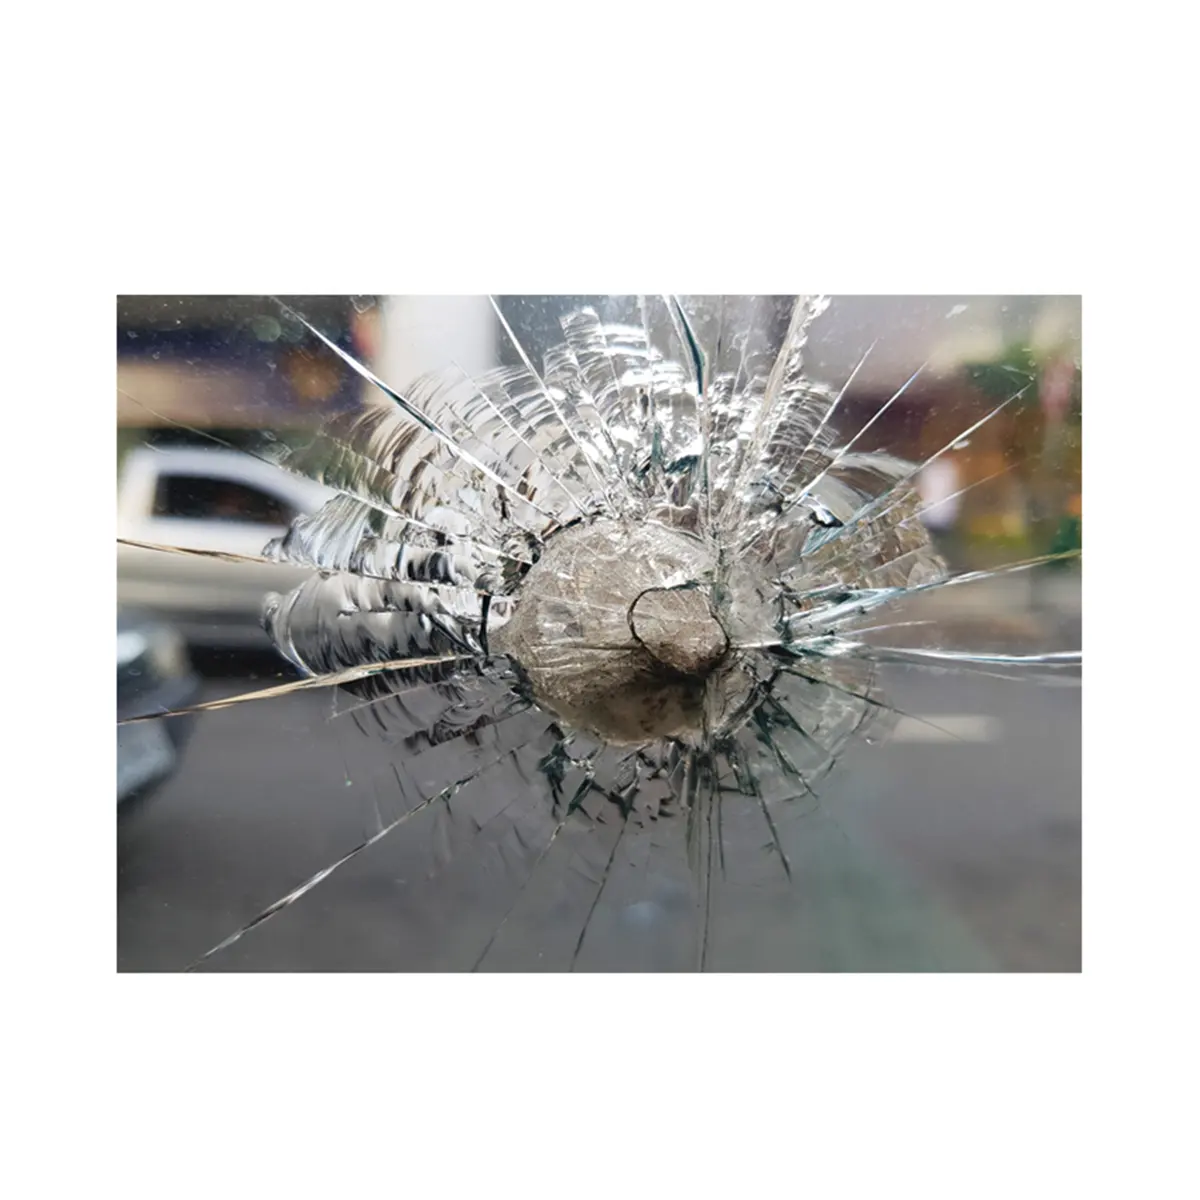 กระจกทนกระสุนปืนป้องกันได้ยากในสถานการณ์ที่มีความเสี่ยงสูงด้วยกระจกกันกระสุนที่ผ่านไม่ได้